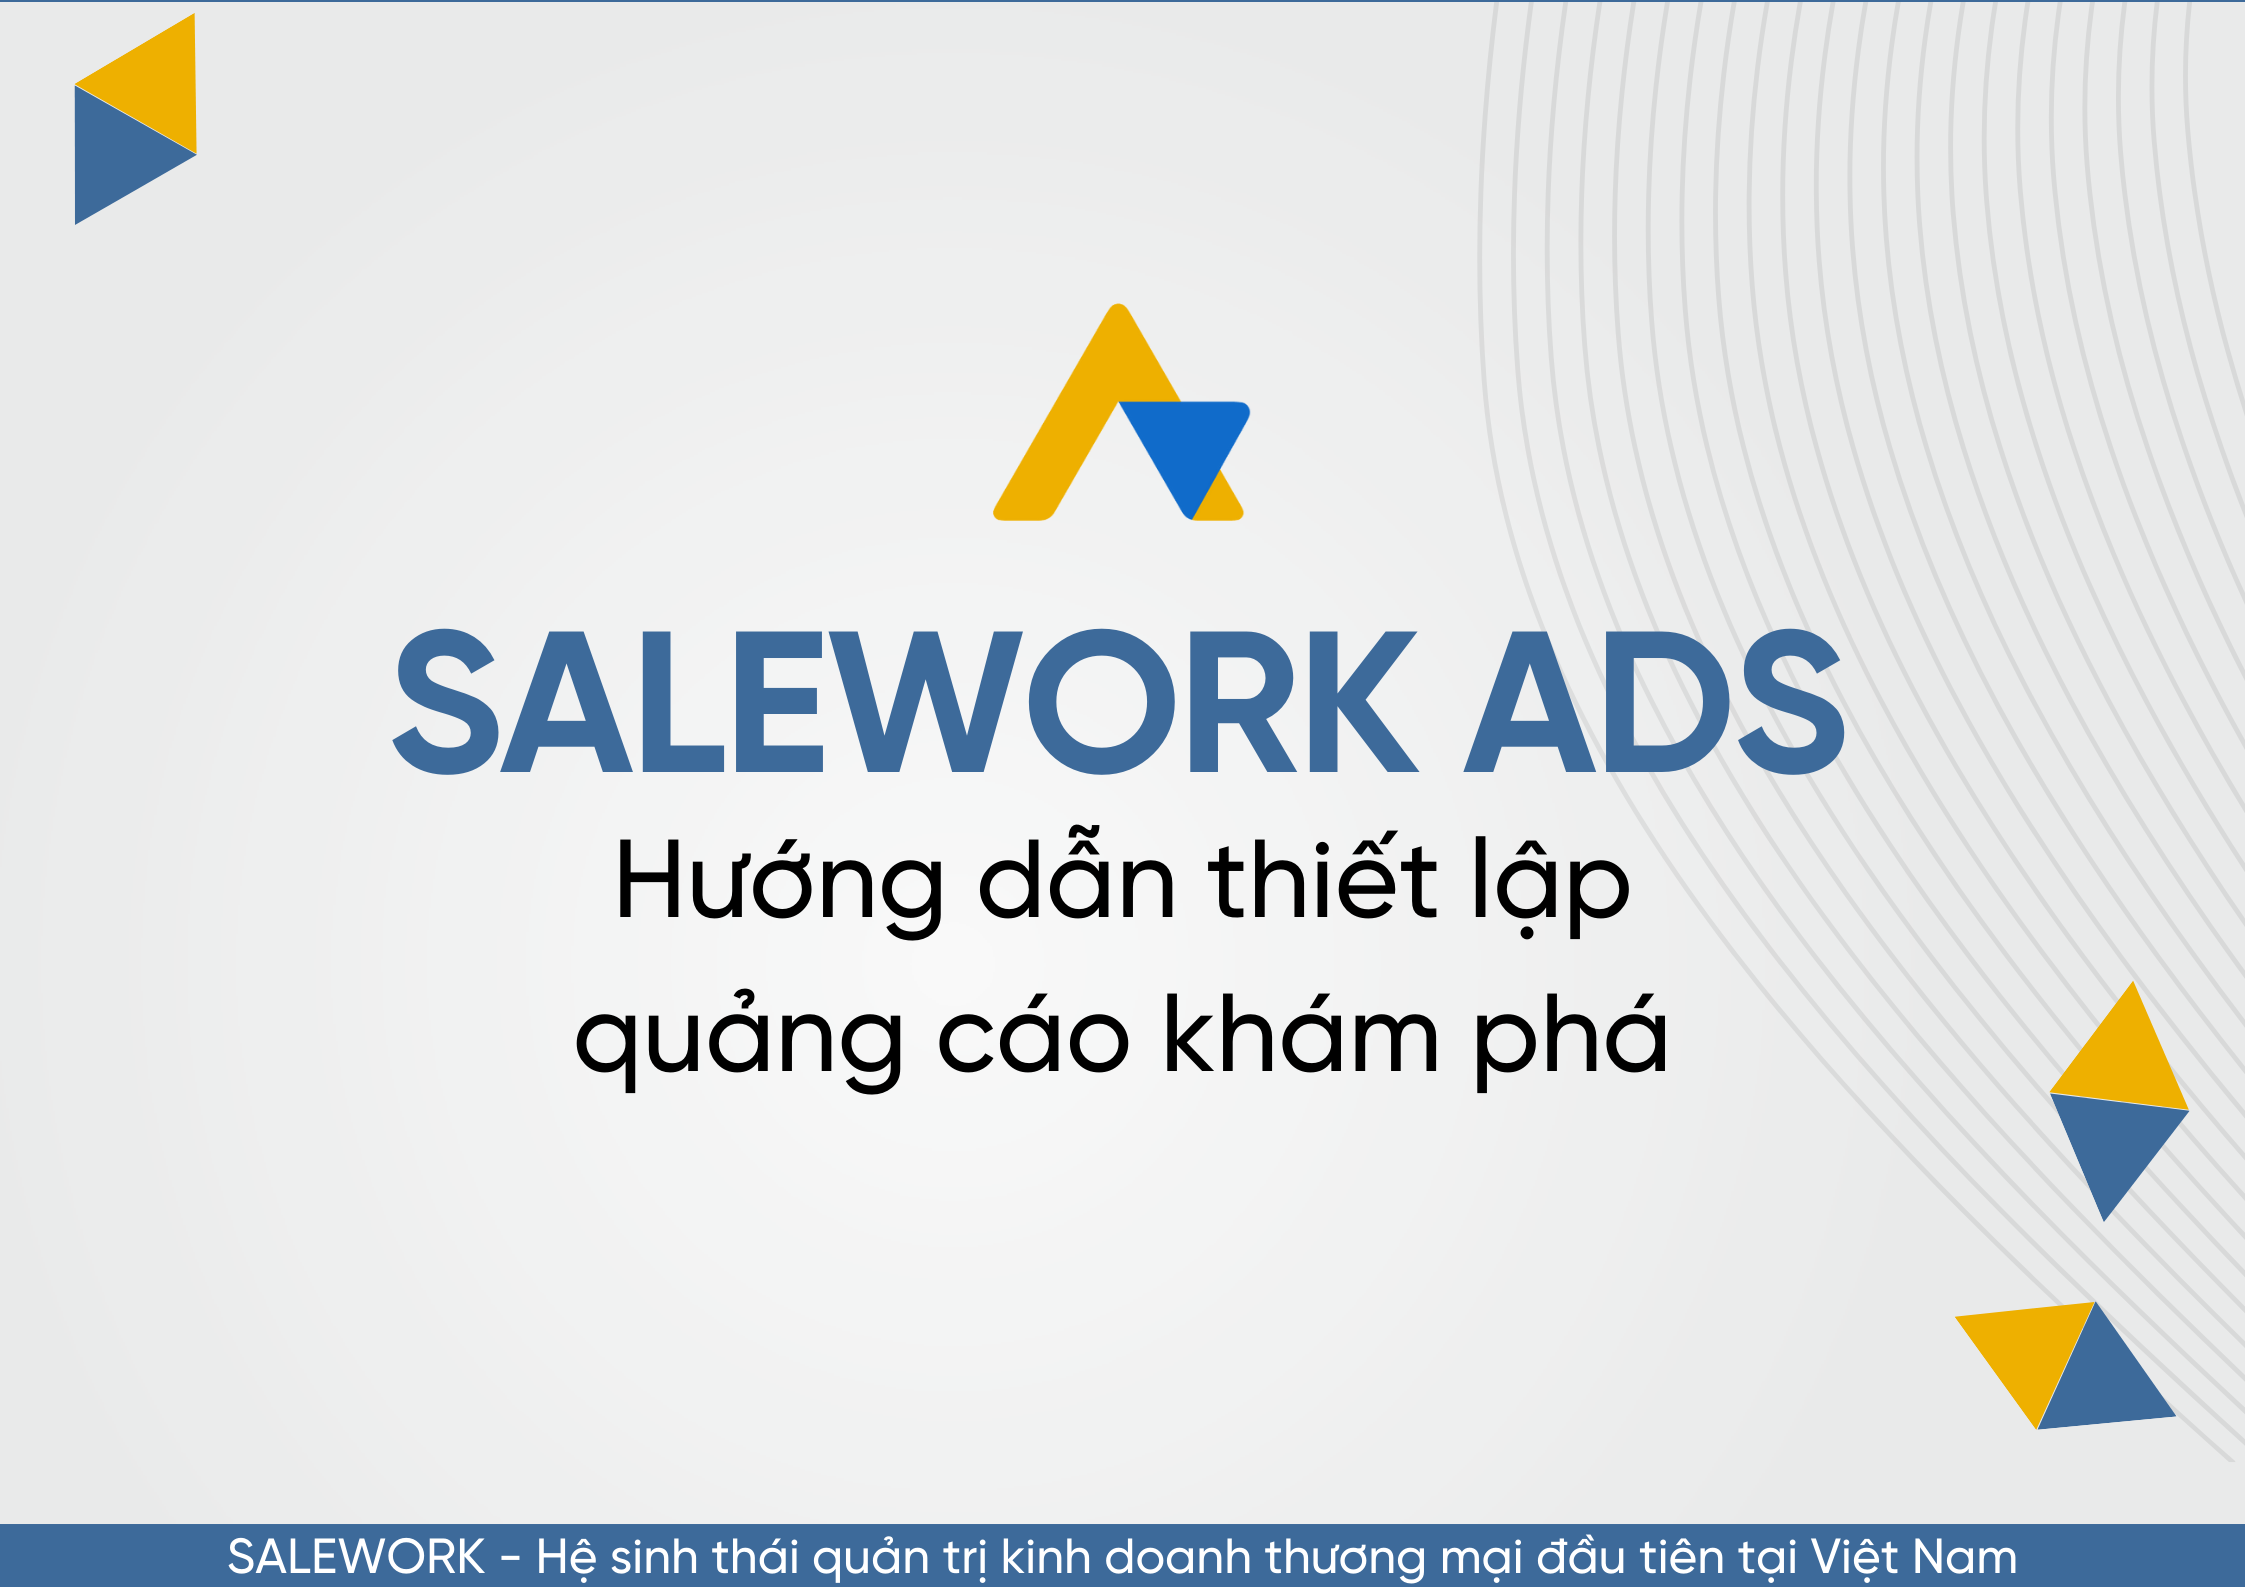 Hướng dẫn thiết lập quảng cáo khám phá tại Salework Ads - 26